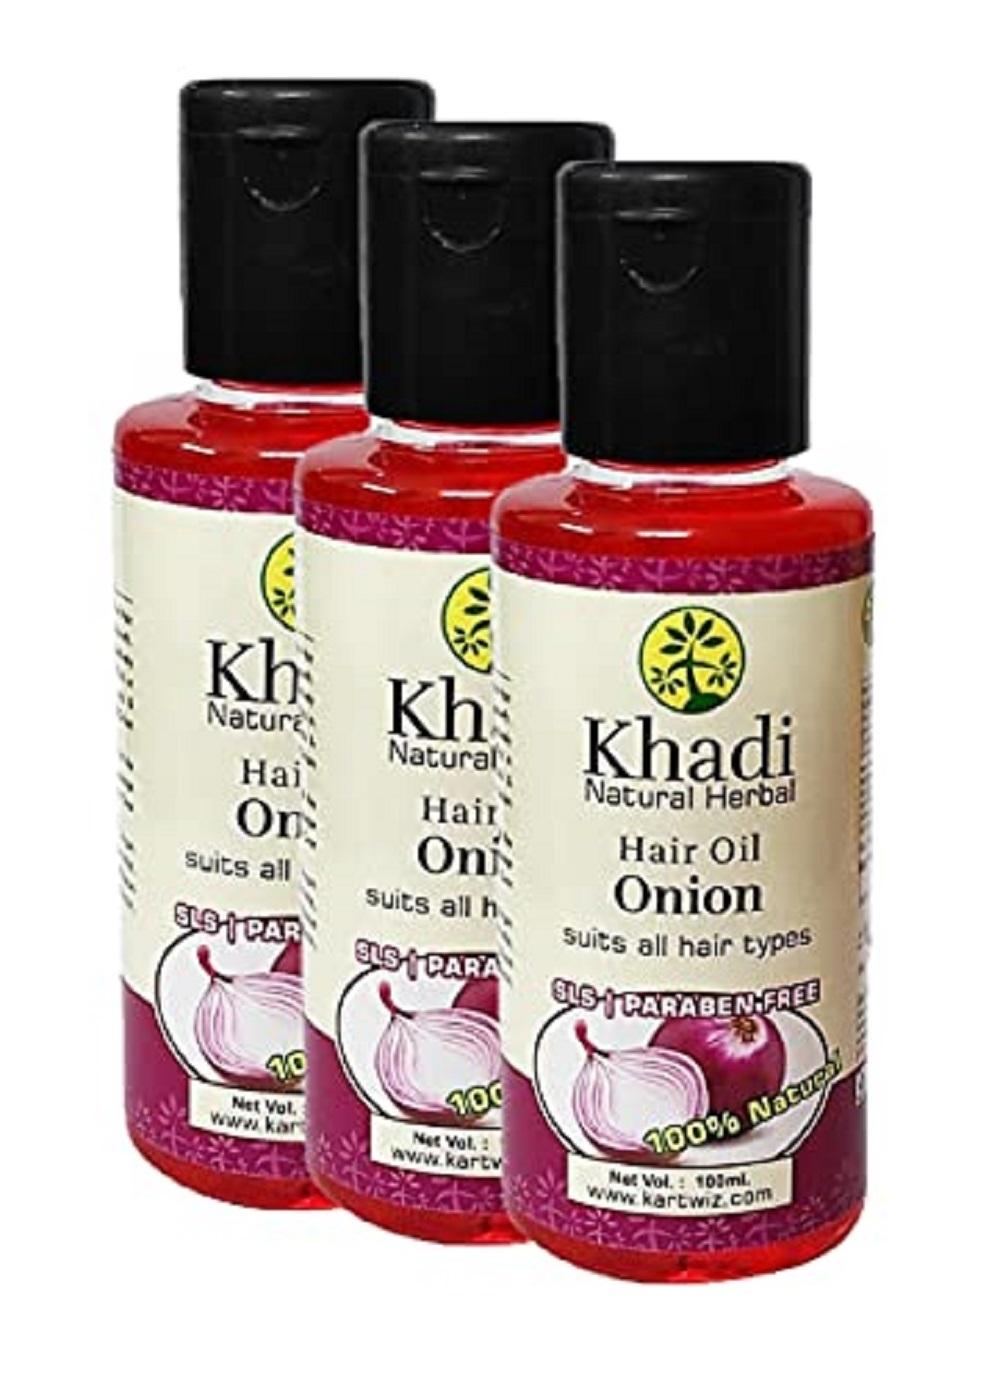 Khadi Natural Herbal Onion Hair Oil For Hair Growth & Hair Fall Control || Fight Dandruff||100ml Pack of 3 - JioMart